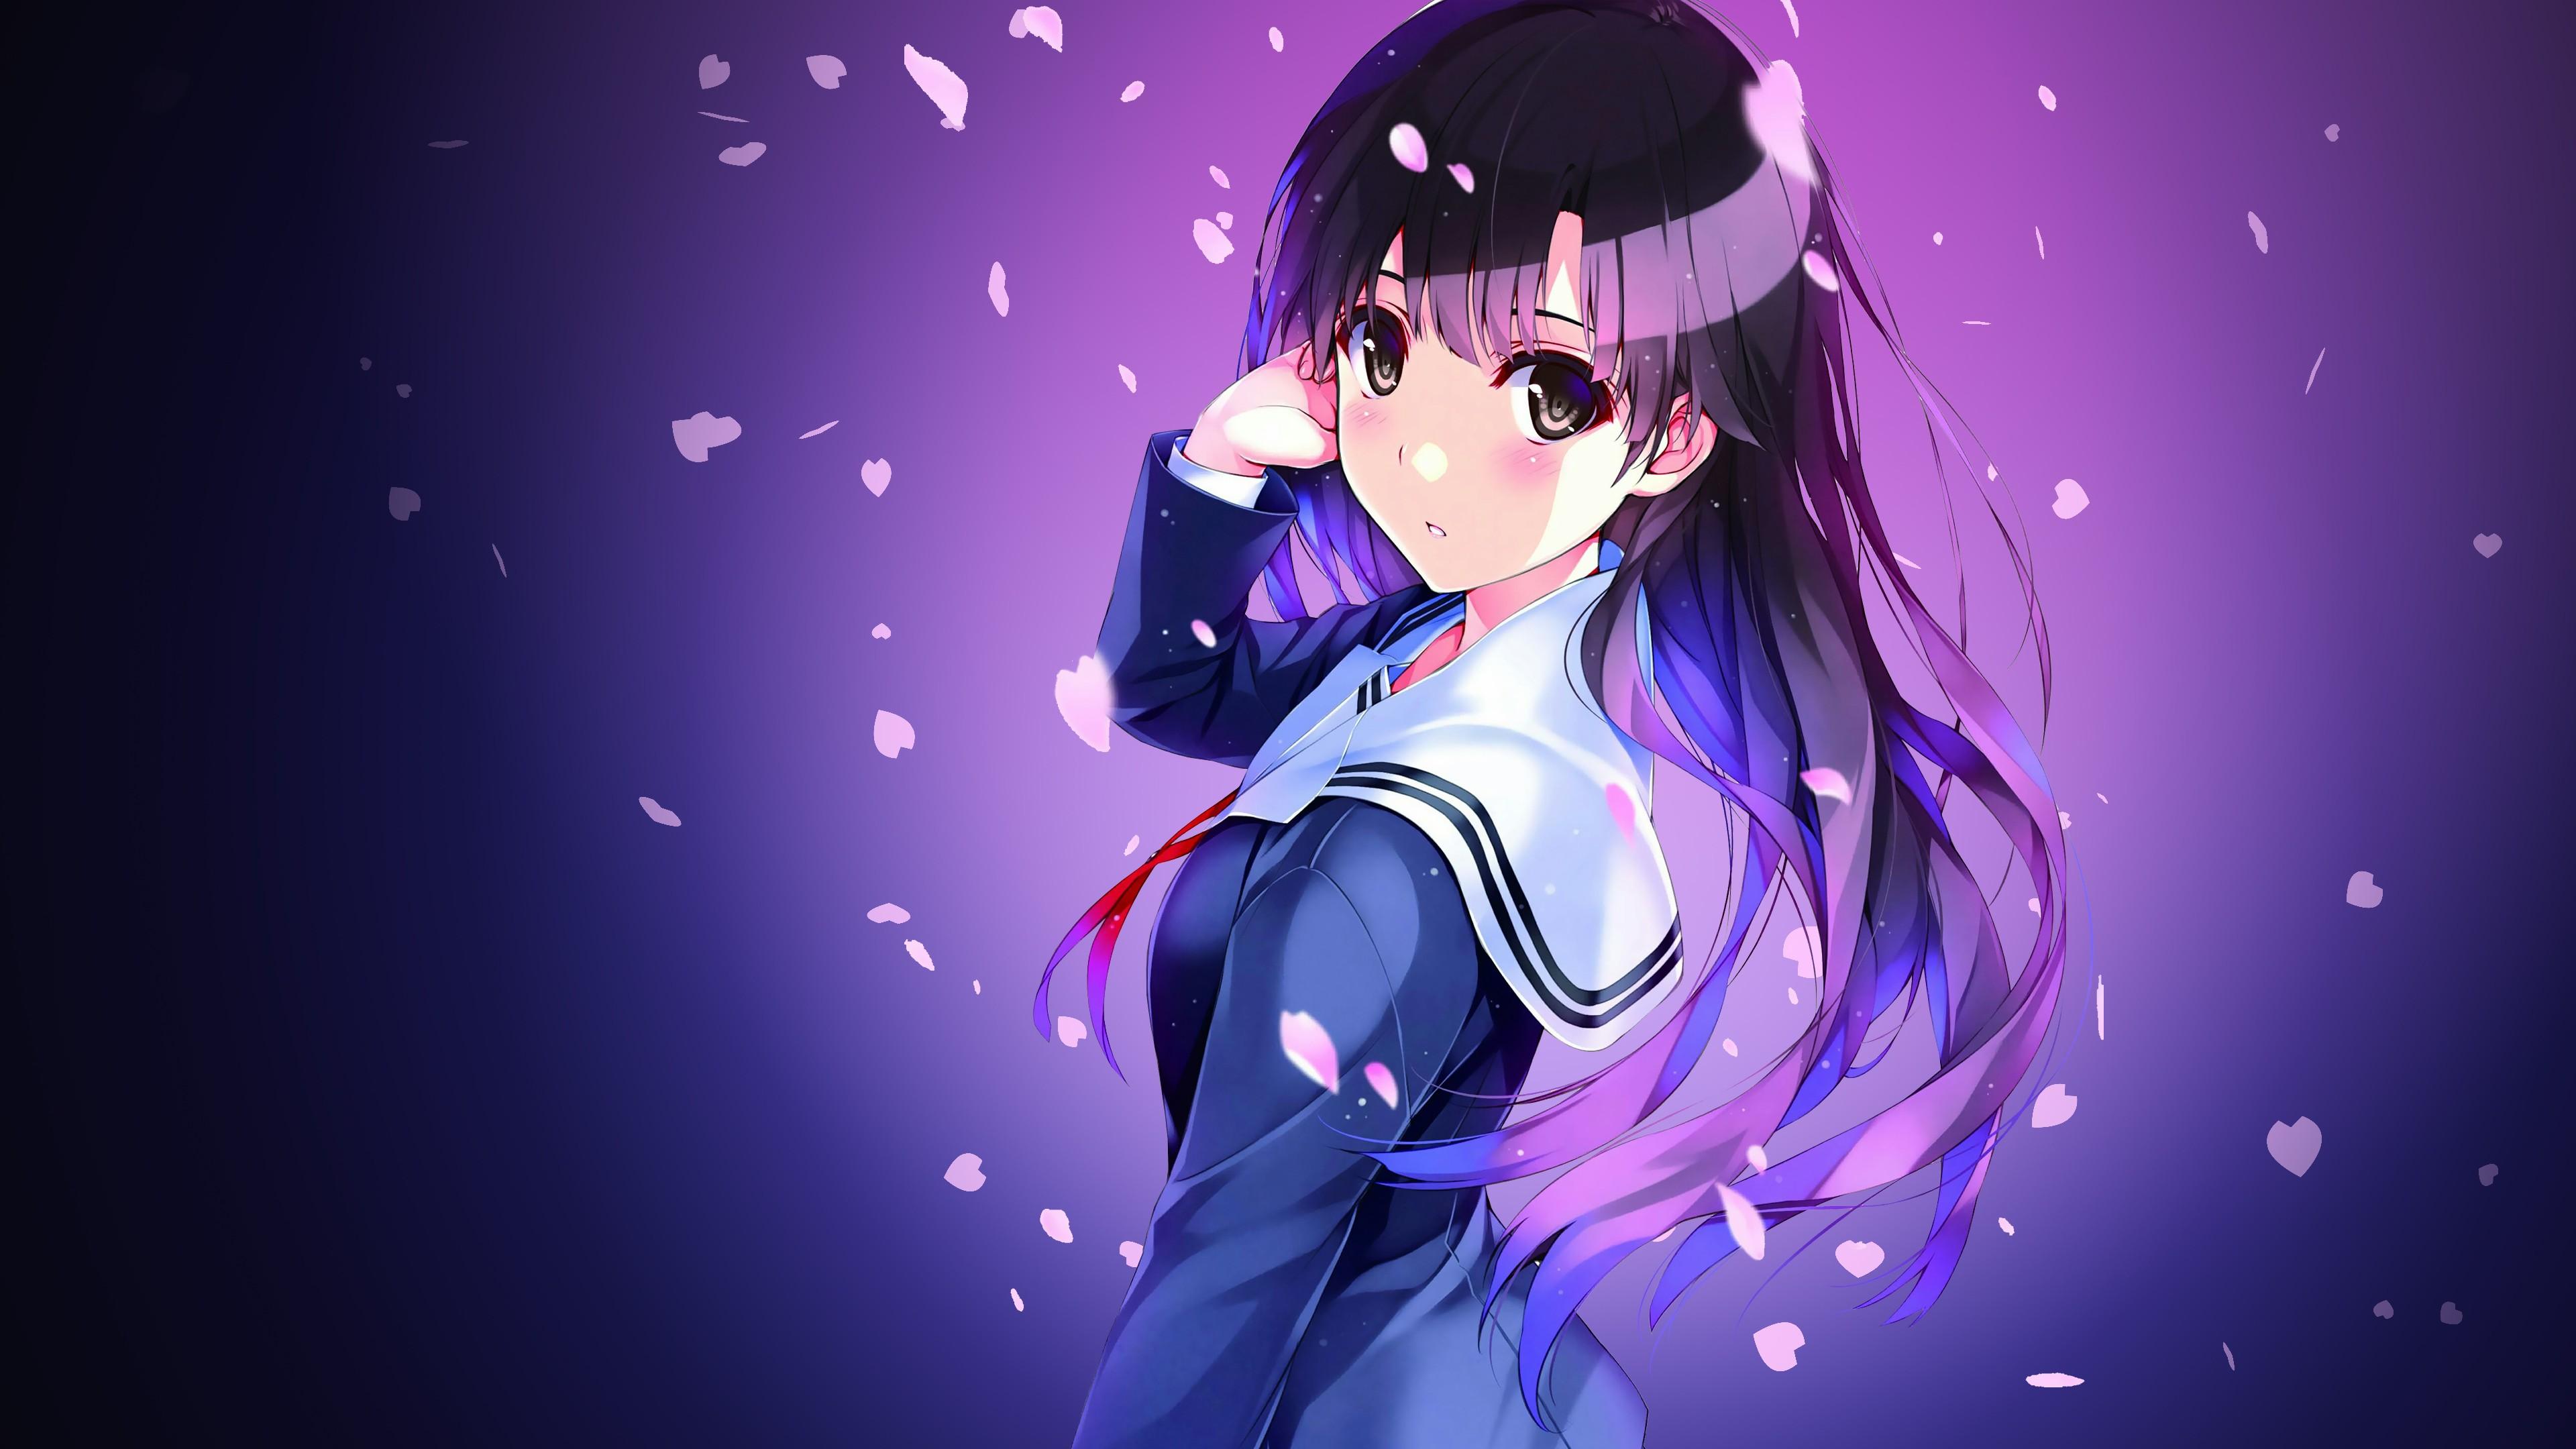 Anime Girls wallpaperDownload free beautiful background